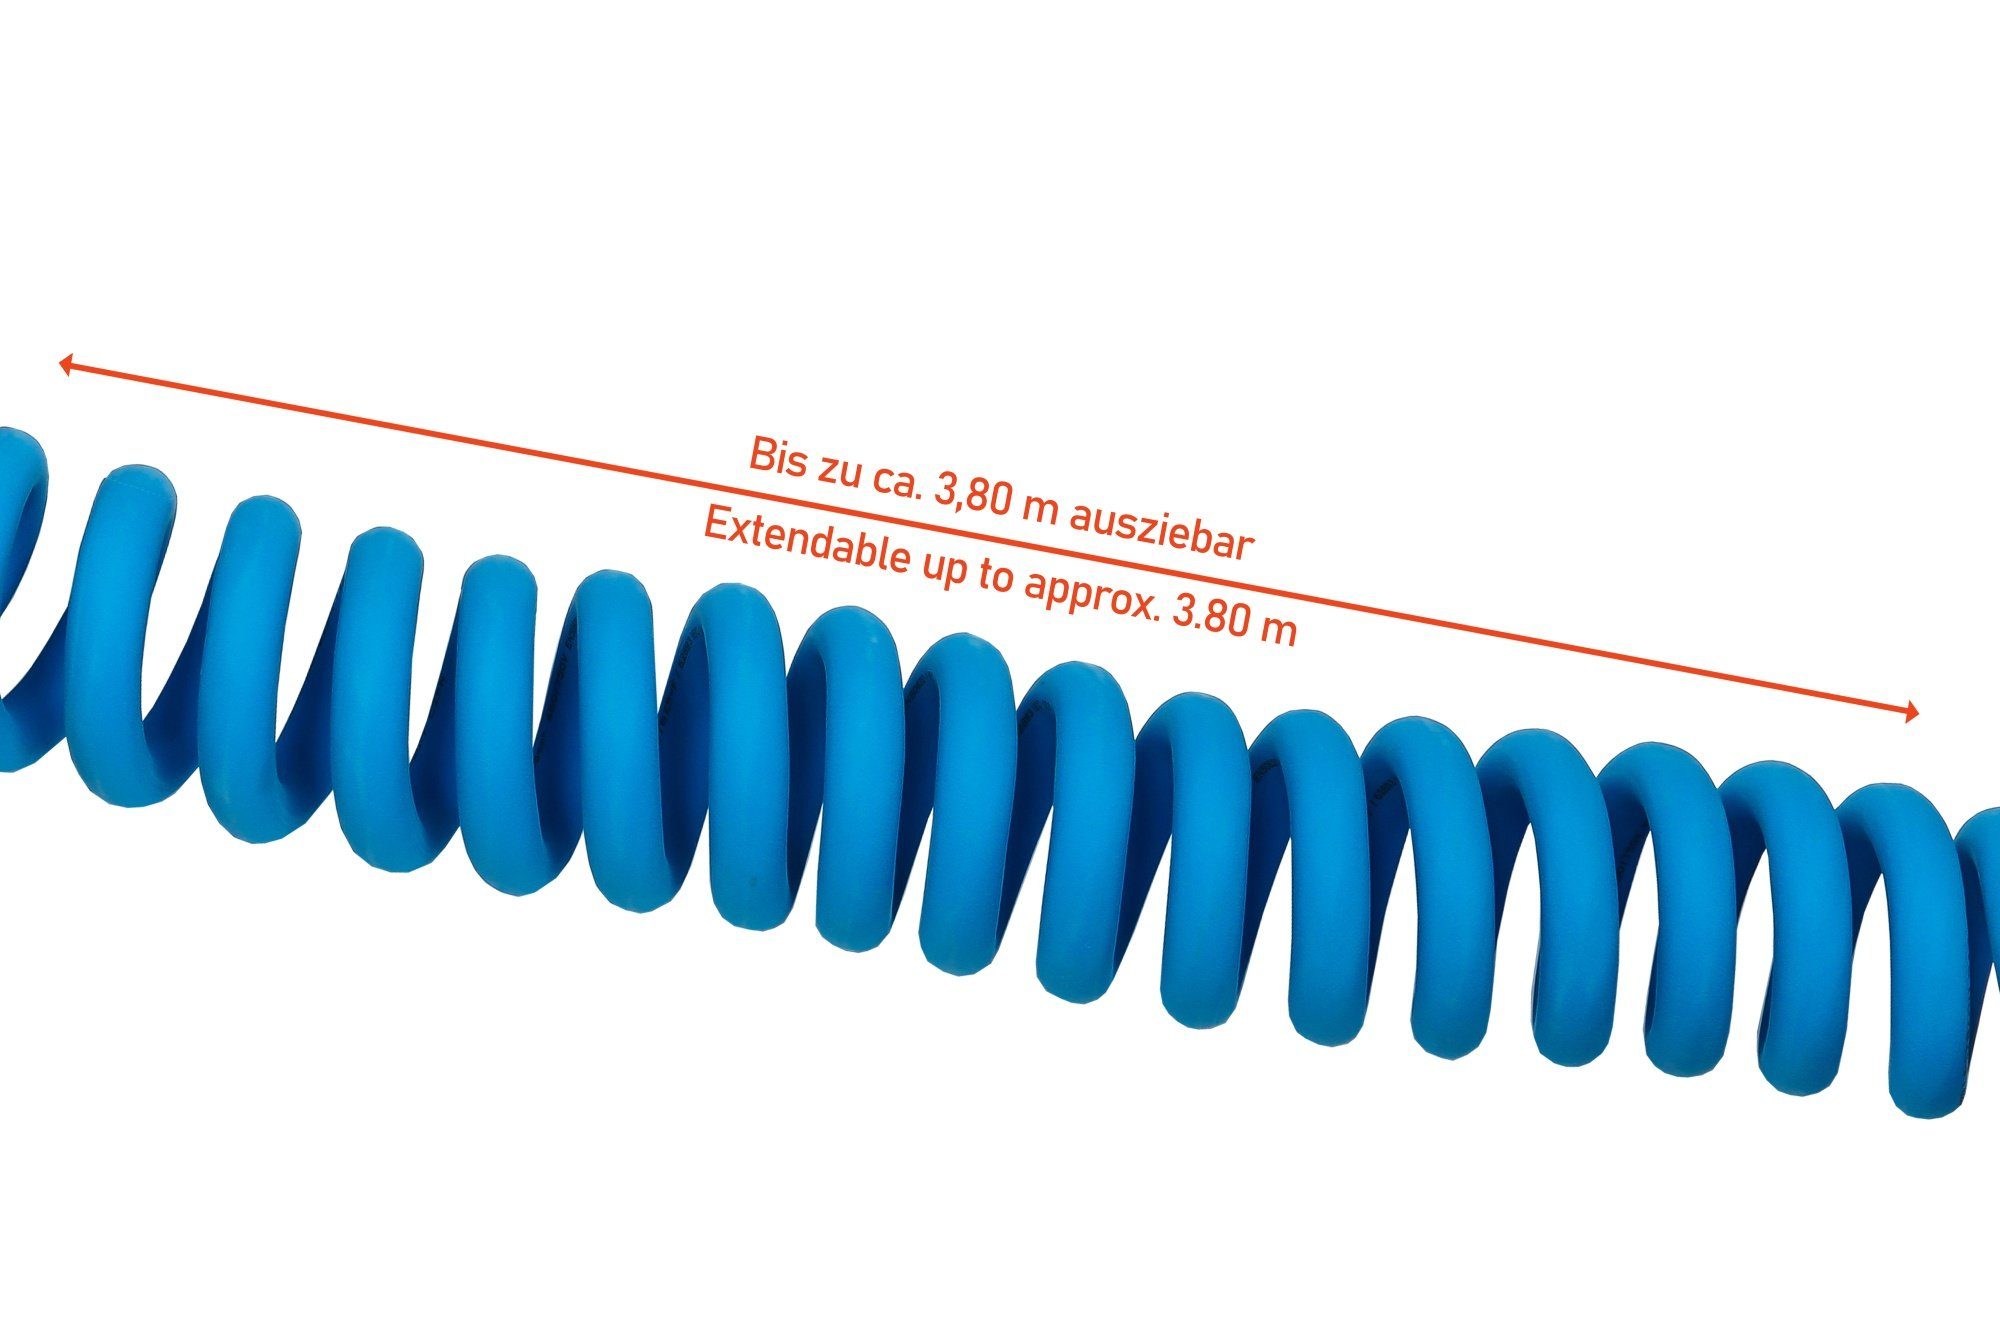 Kabelmeister E-Auto-Ladekabel Mode 3, Elektroauto-Ladegerät Typ 2,3-phasig,16A,11kW,Spiralkabel,blau,5m